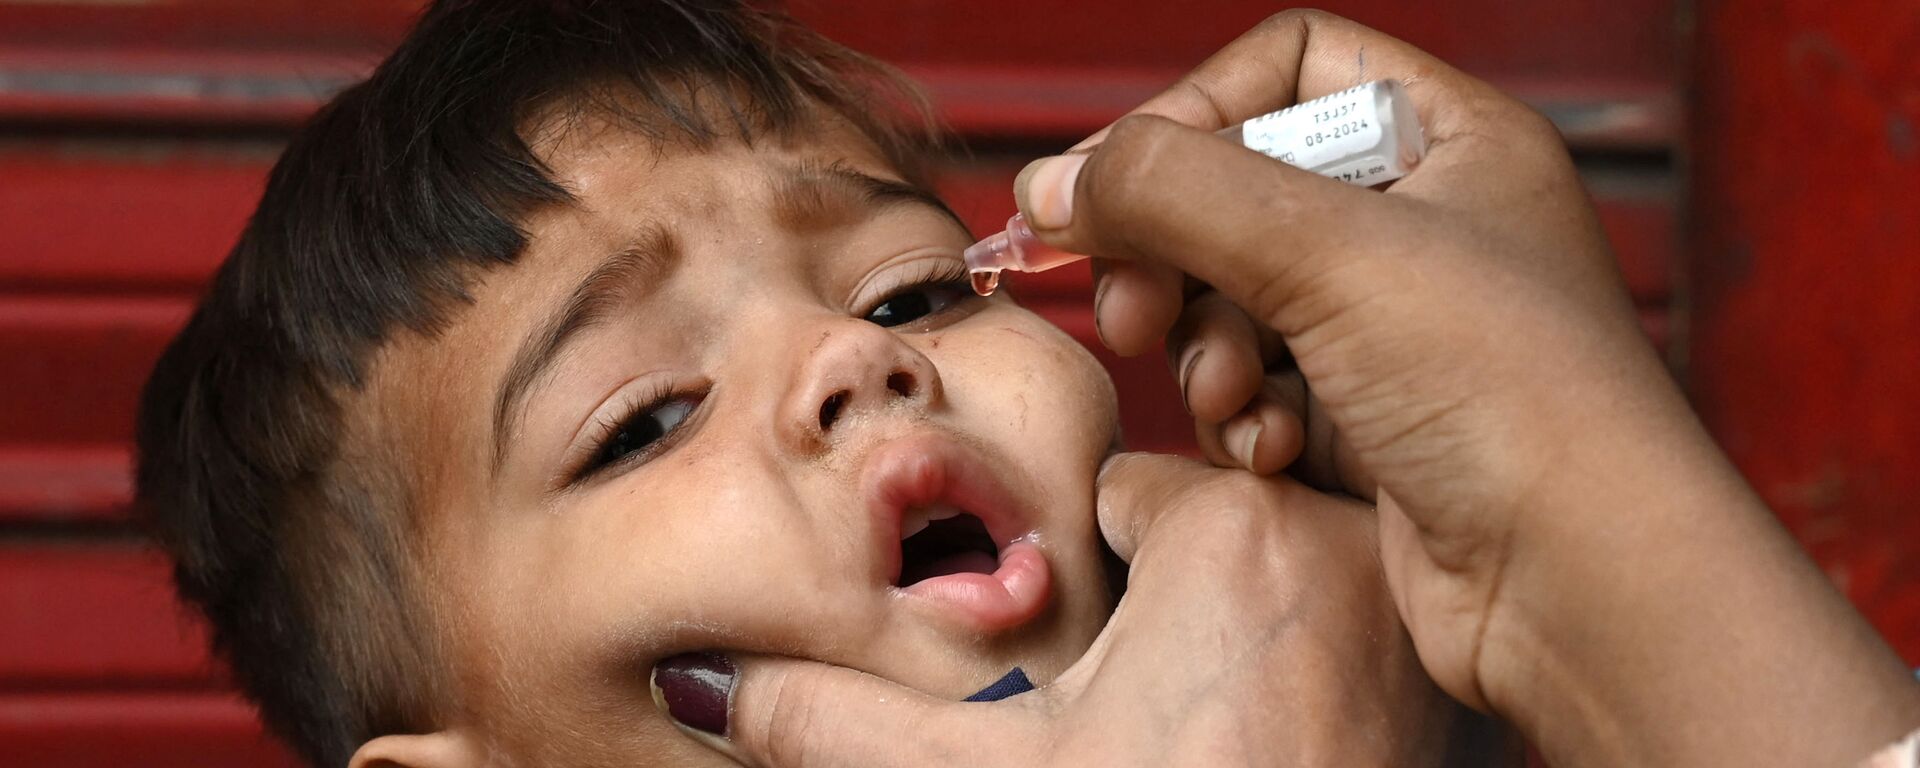 Медицинский работник вводит капли вакцины против полиомиелита ребенку - Sputnik Таджикистан, 1920, 17.09.2021